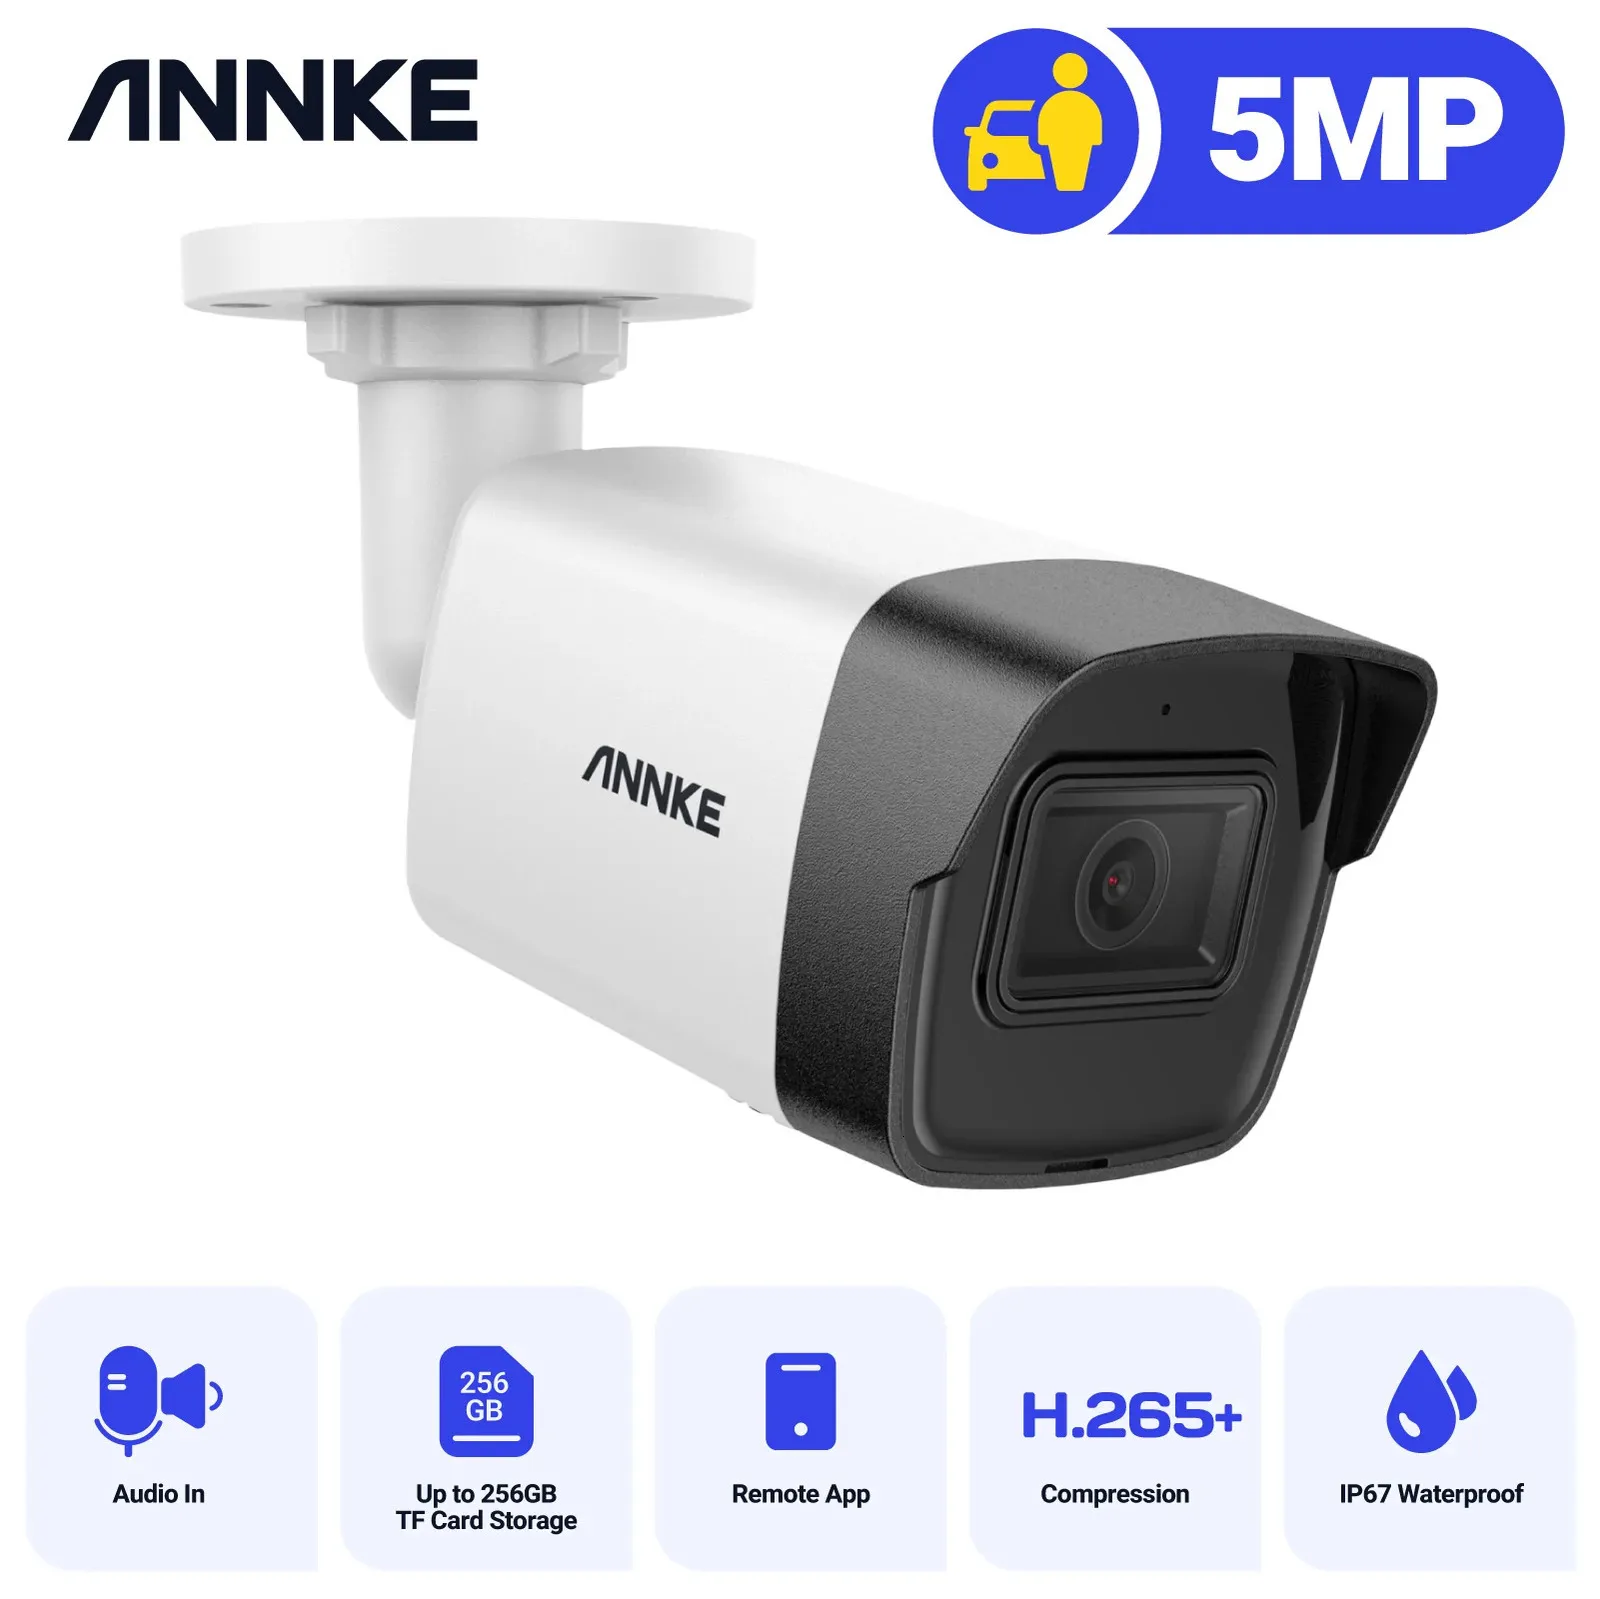 Annke 5MP POE IP 보안 총알 카메라 2.8mm 렌즈 슈퍼 HD 카메라 원격 액세스 모션 감지 내장 마이크 감시 240126